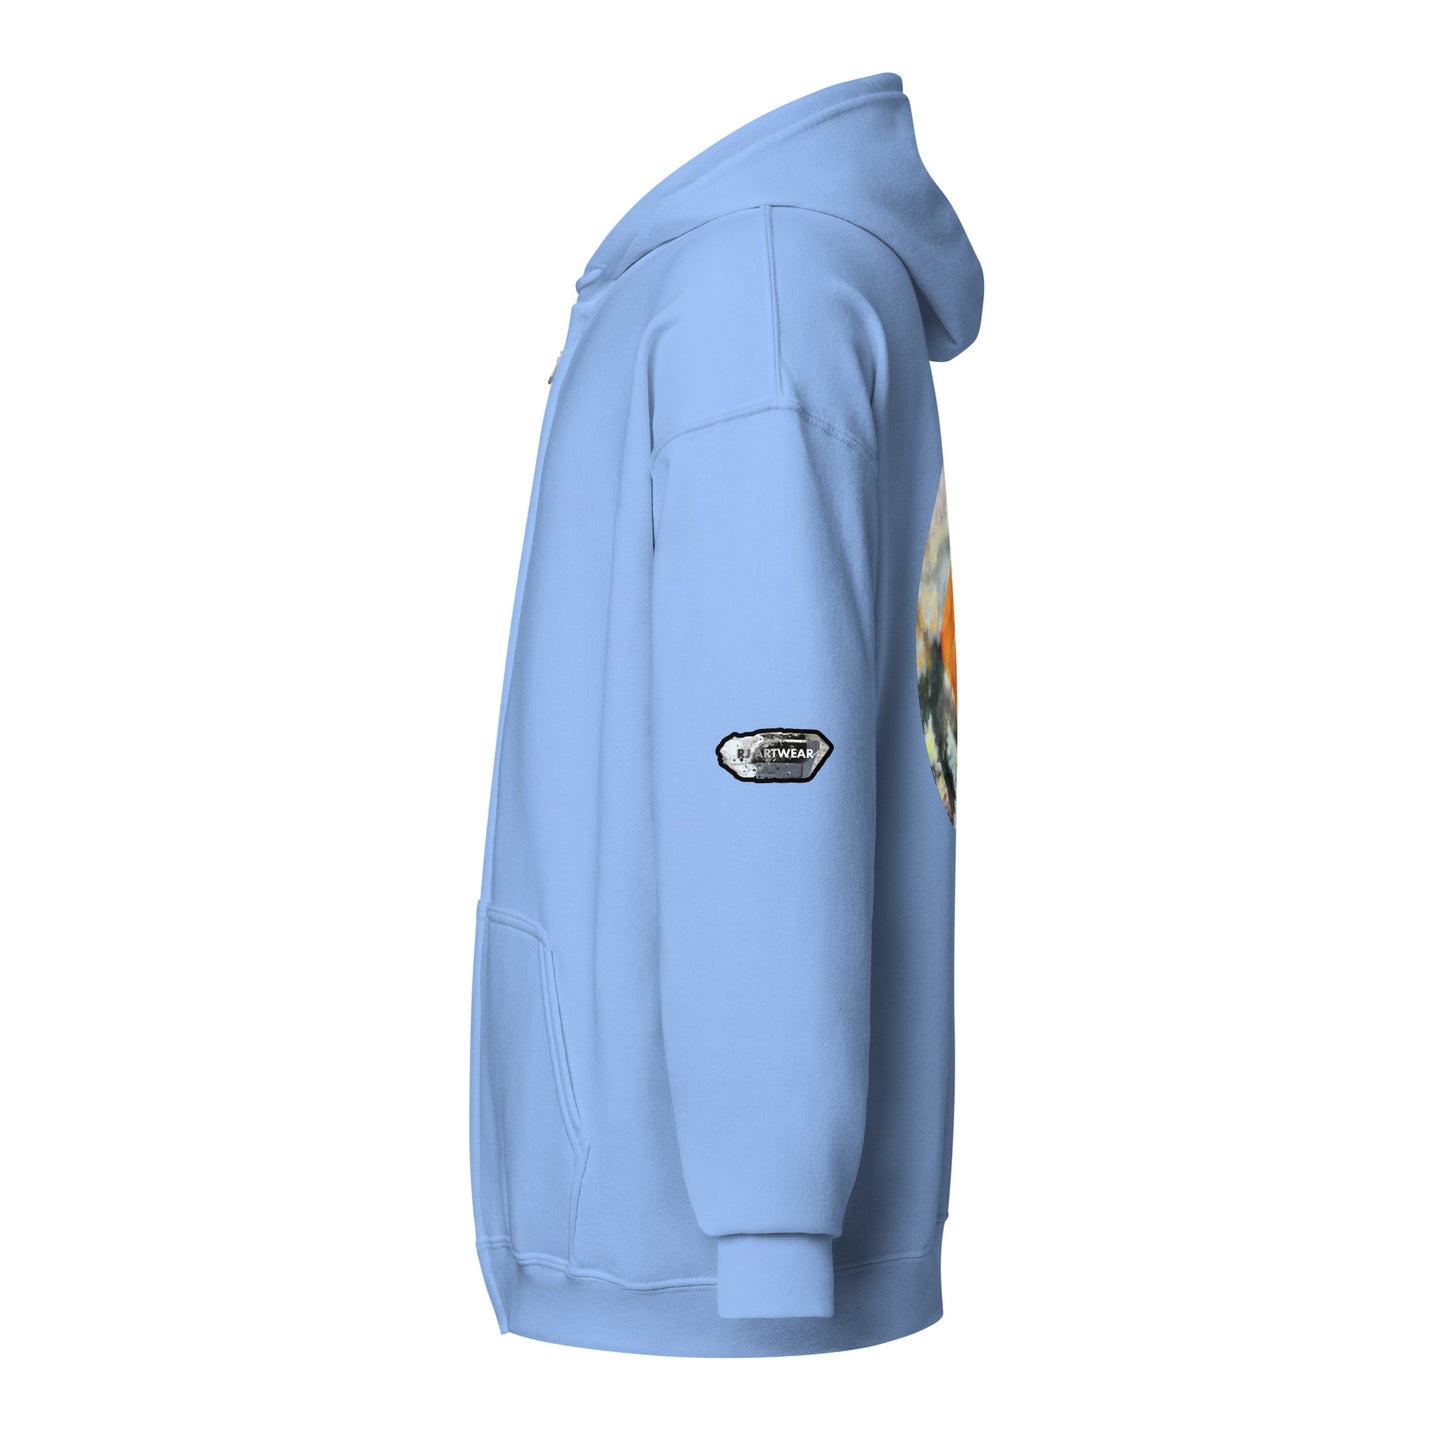 Tiger Mine Wulfenite Micro Drawing - Unisex heavy blend zip hoodie